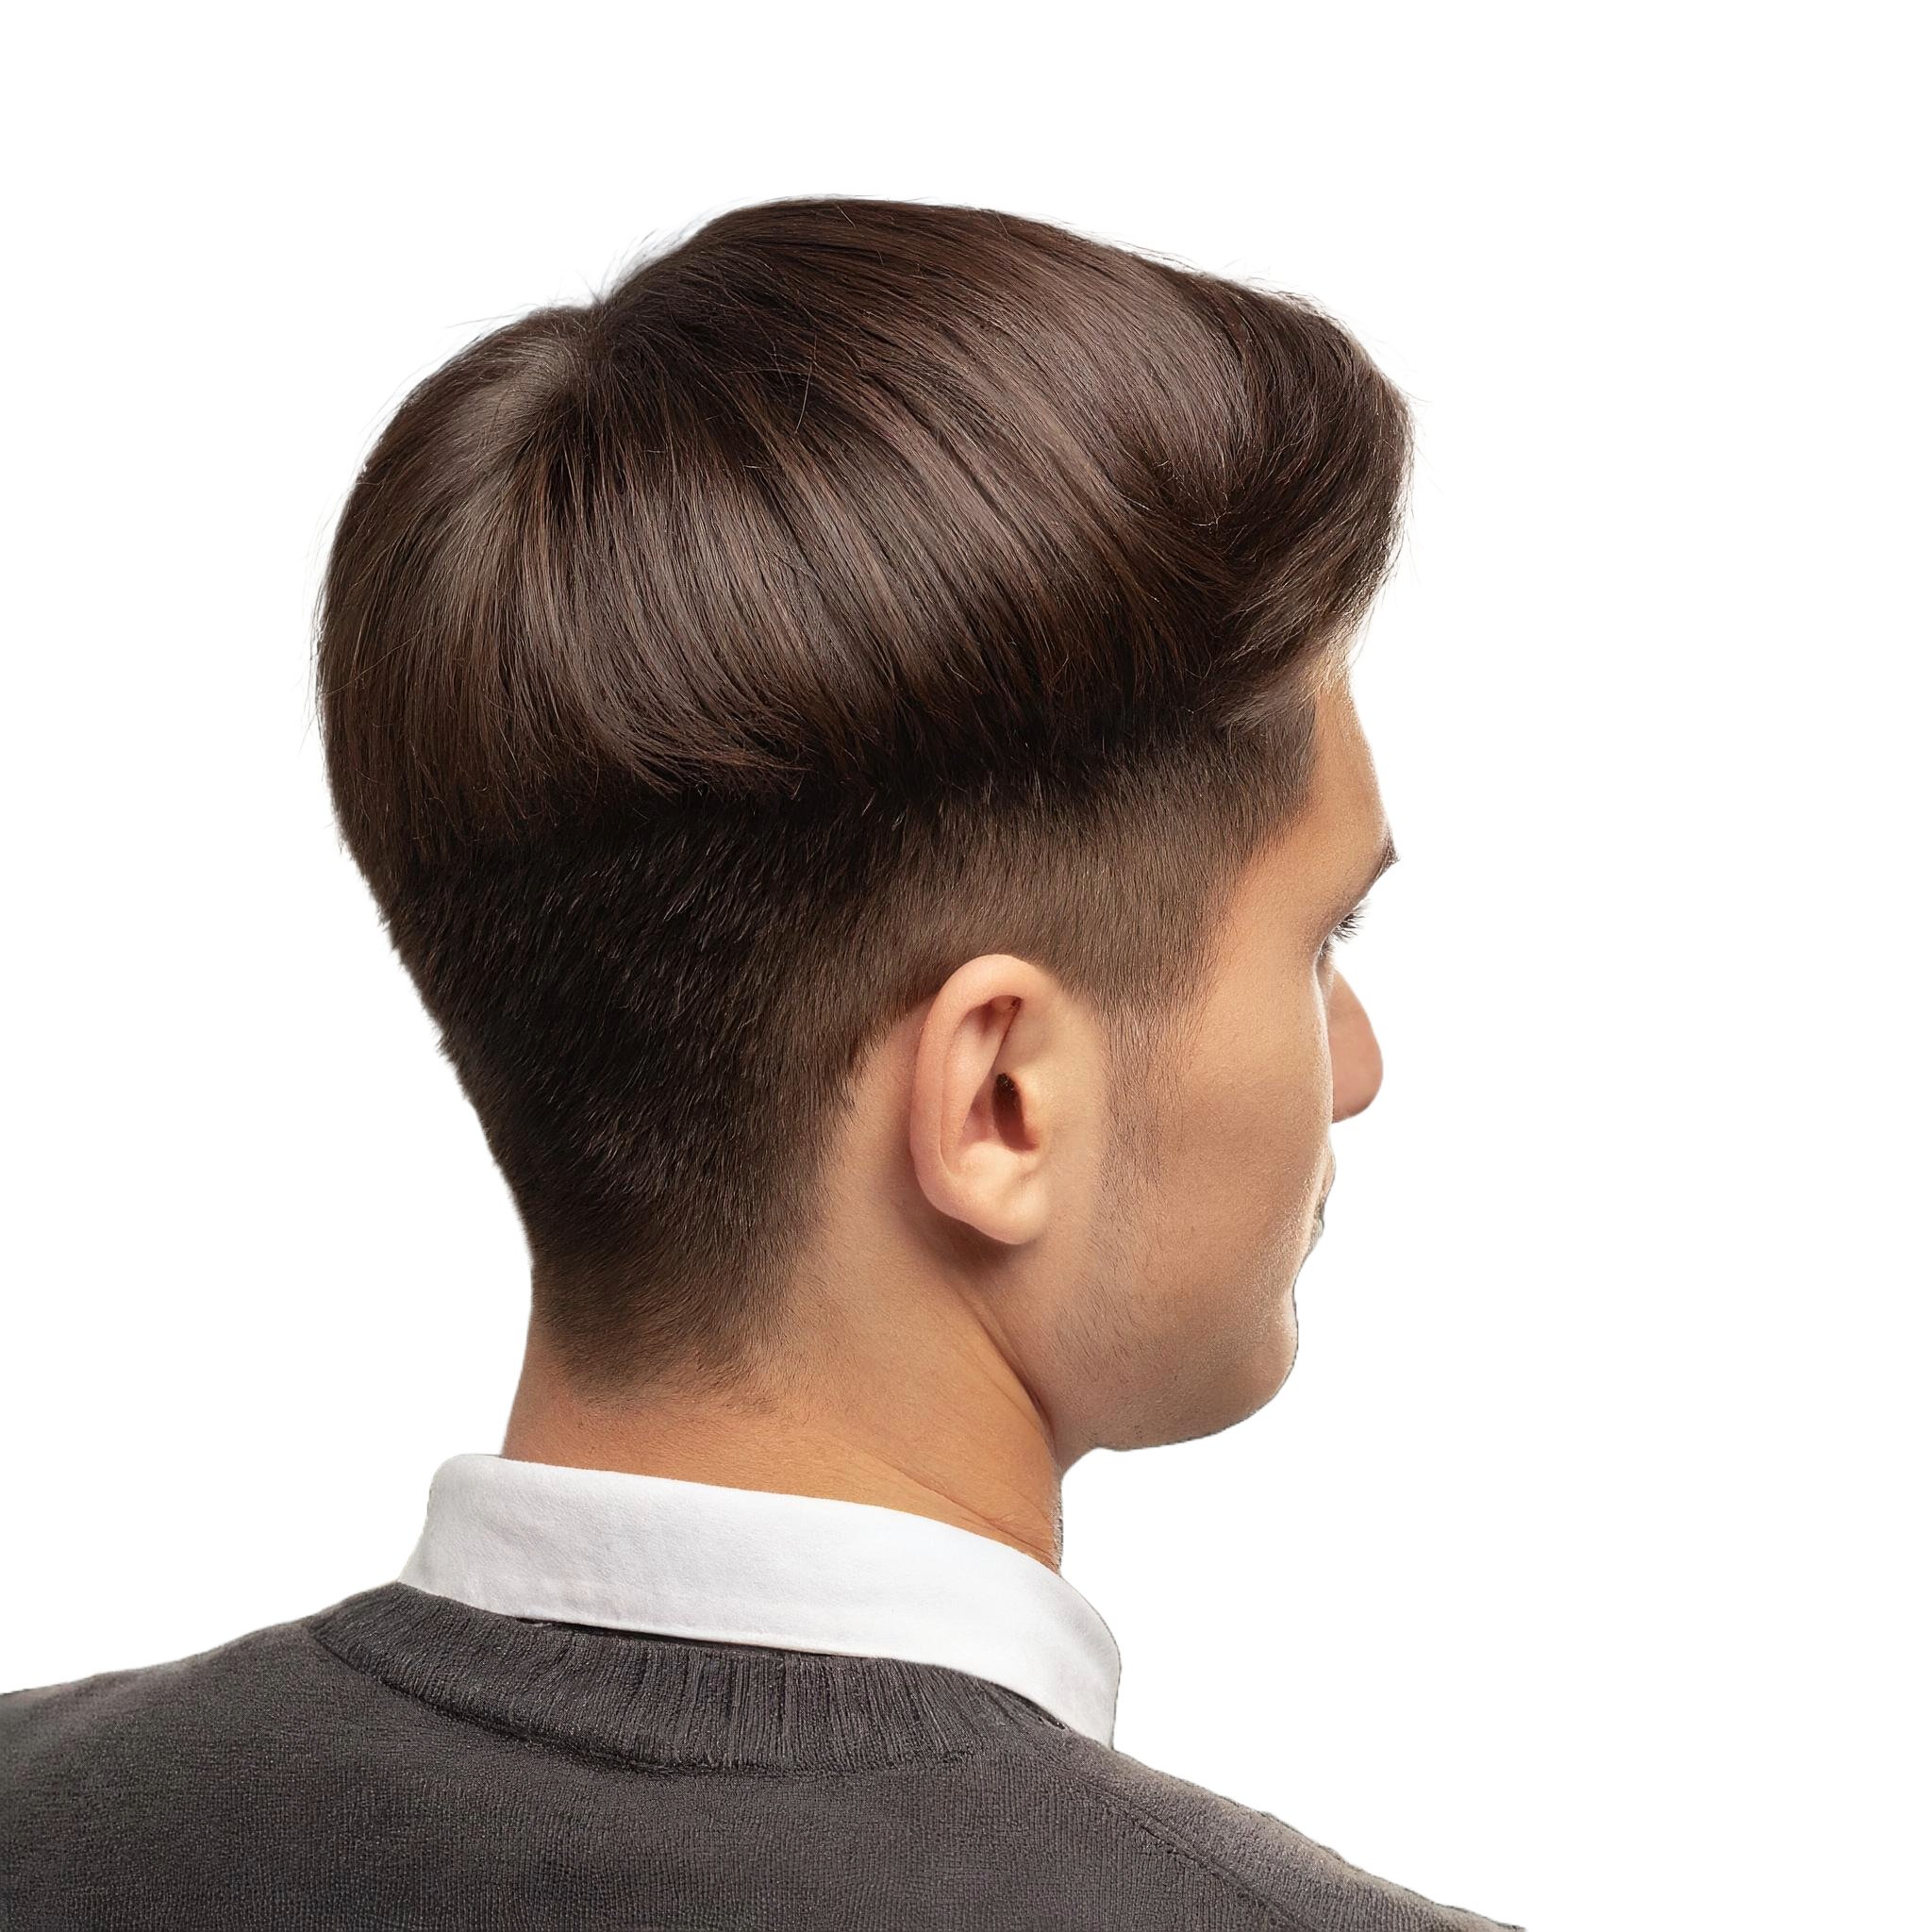 Ein Profilblick auf eine Person mit einem gepflegten Haarschnitt. Das Haar ist oben länger und nach hinten gekämmt, was eine geschmeidige, gewölbte Form ergibt. Die Seiten sind kürzer und führen zu einem subtilen Übergang am Hinterkopf. Der Gesamteindruck ist ordentlich und stylisch.